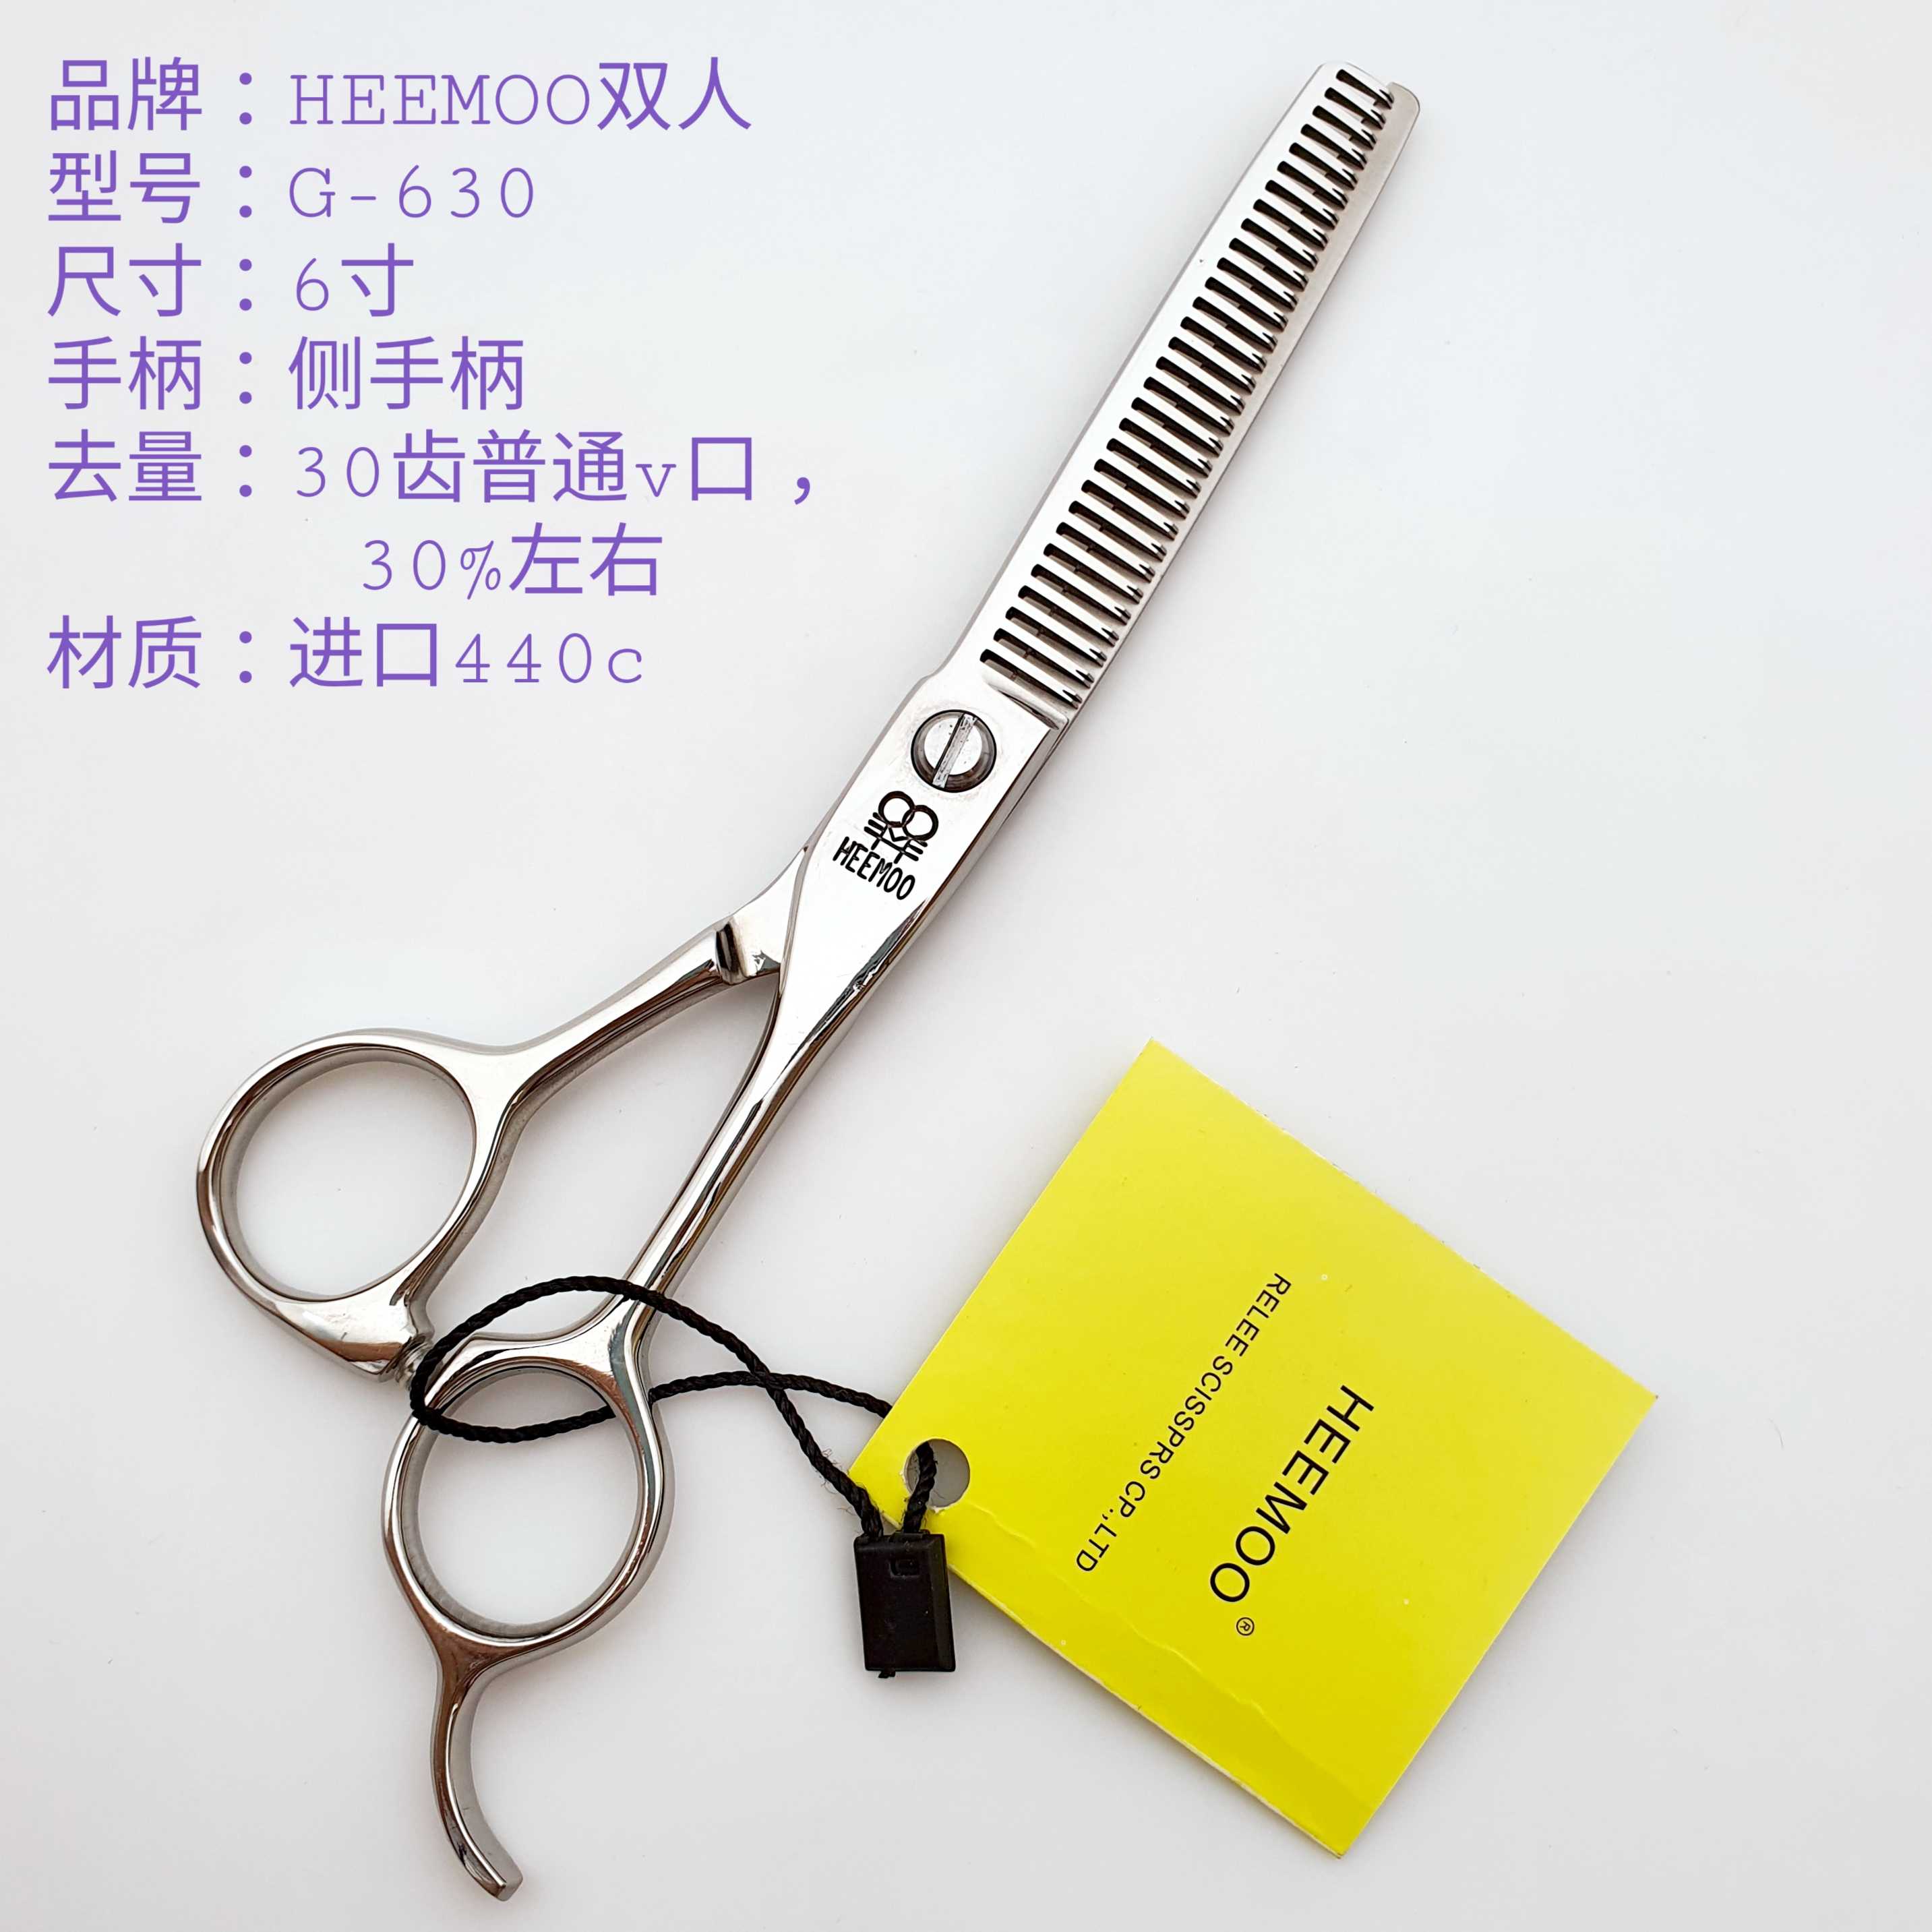 台湾双人牙剪HEEMOO打薄剪G630理发剪刀专业发型师HOT美发剪